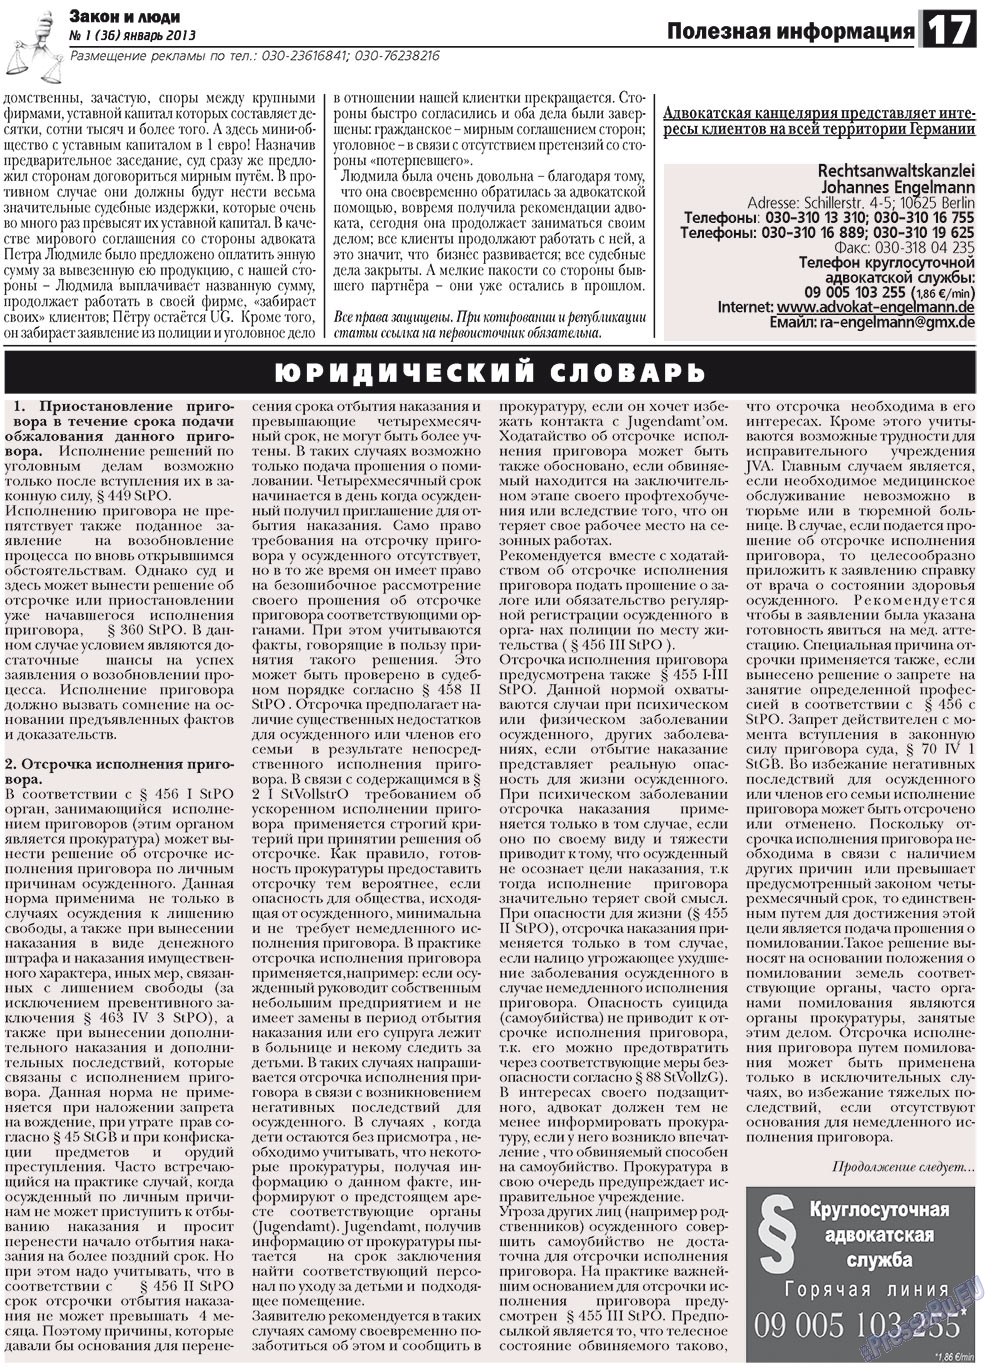 Закон и люди (газета). 2013 год, номер 1, стр. 17